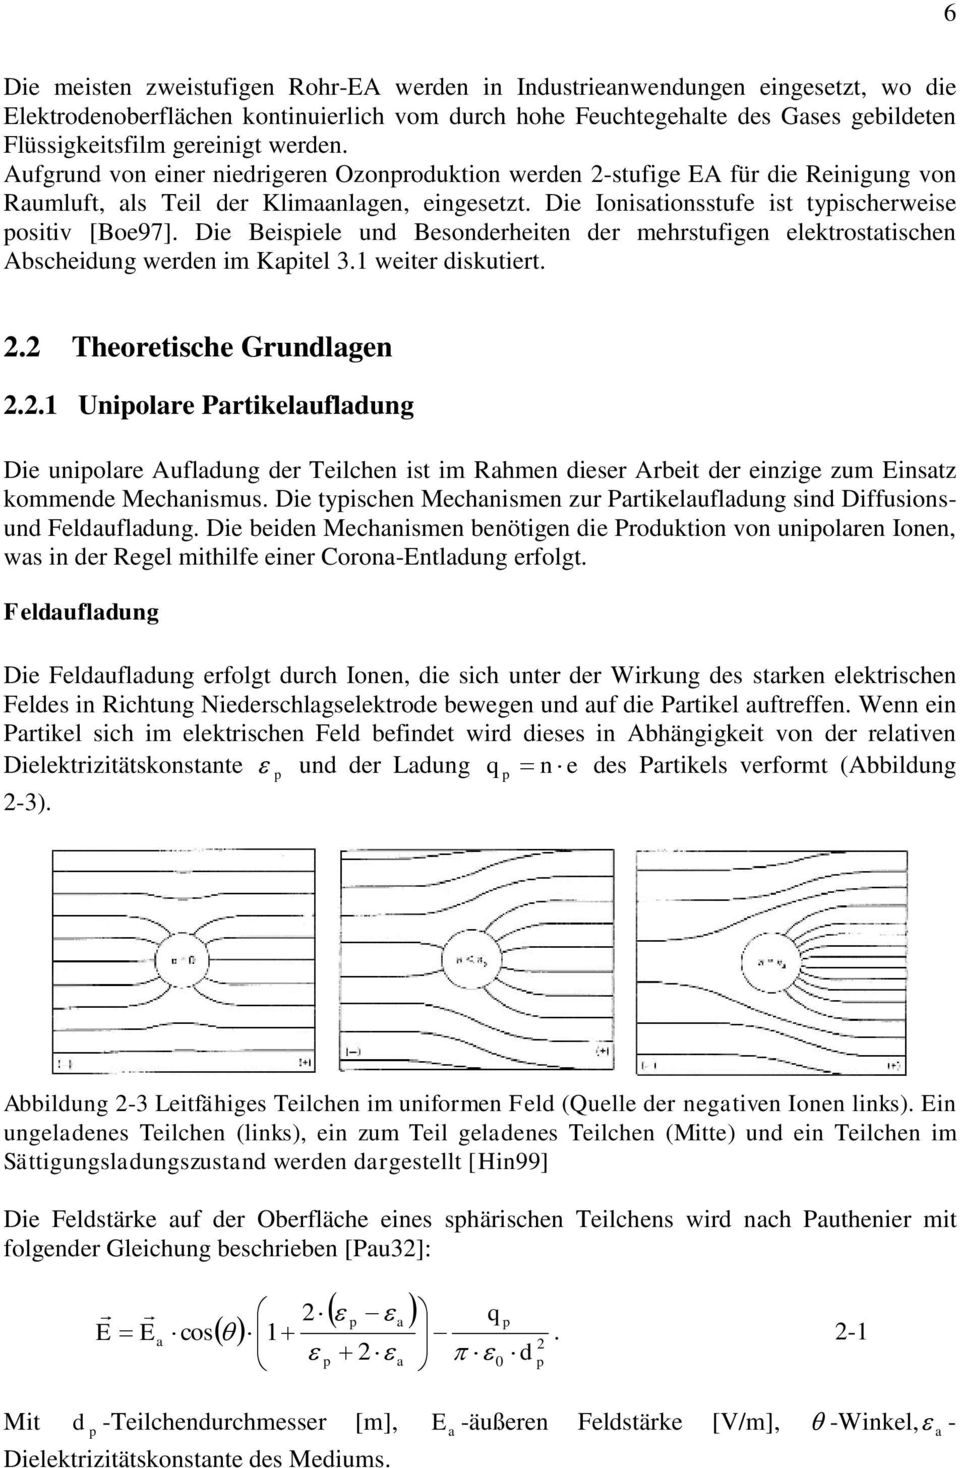 Die Beispiele und Besondeheiten de mehstufigen elektostatischen Abscheidung weden im Kapitel 3.1 weite diskutiet.. Theoetische Gundlagen.